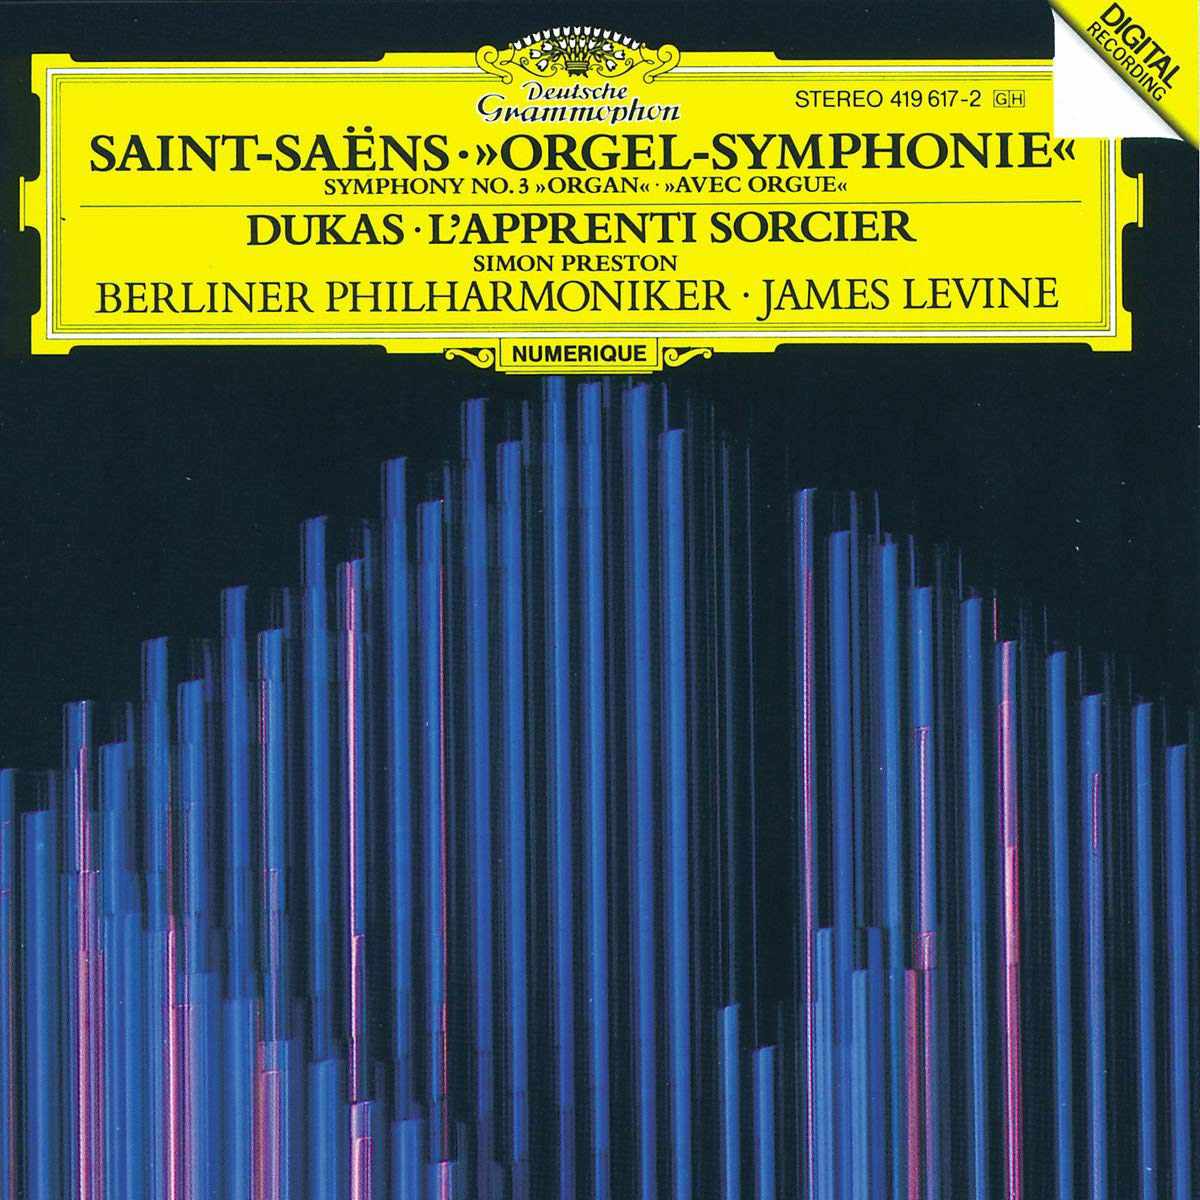 Symphony No. 3 od Saint-Saëns, obal alba „Organ Symphony“